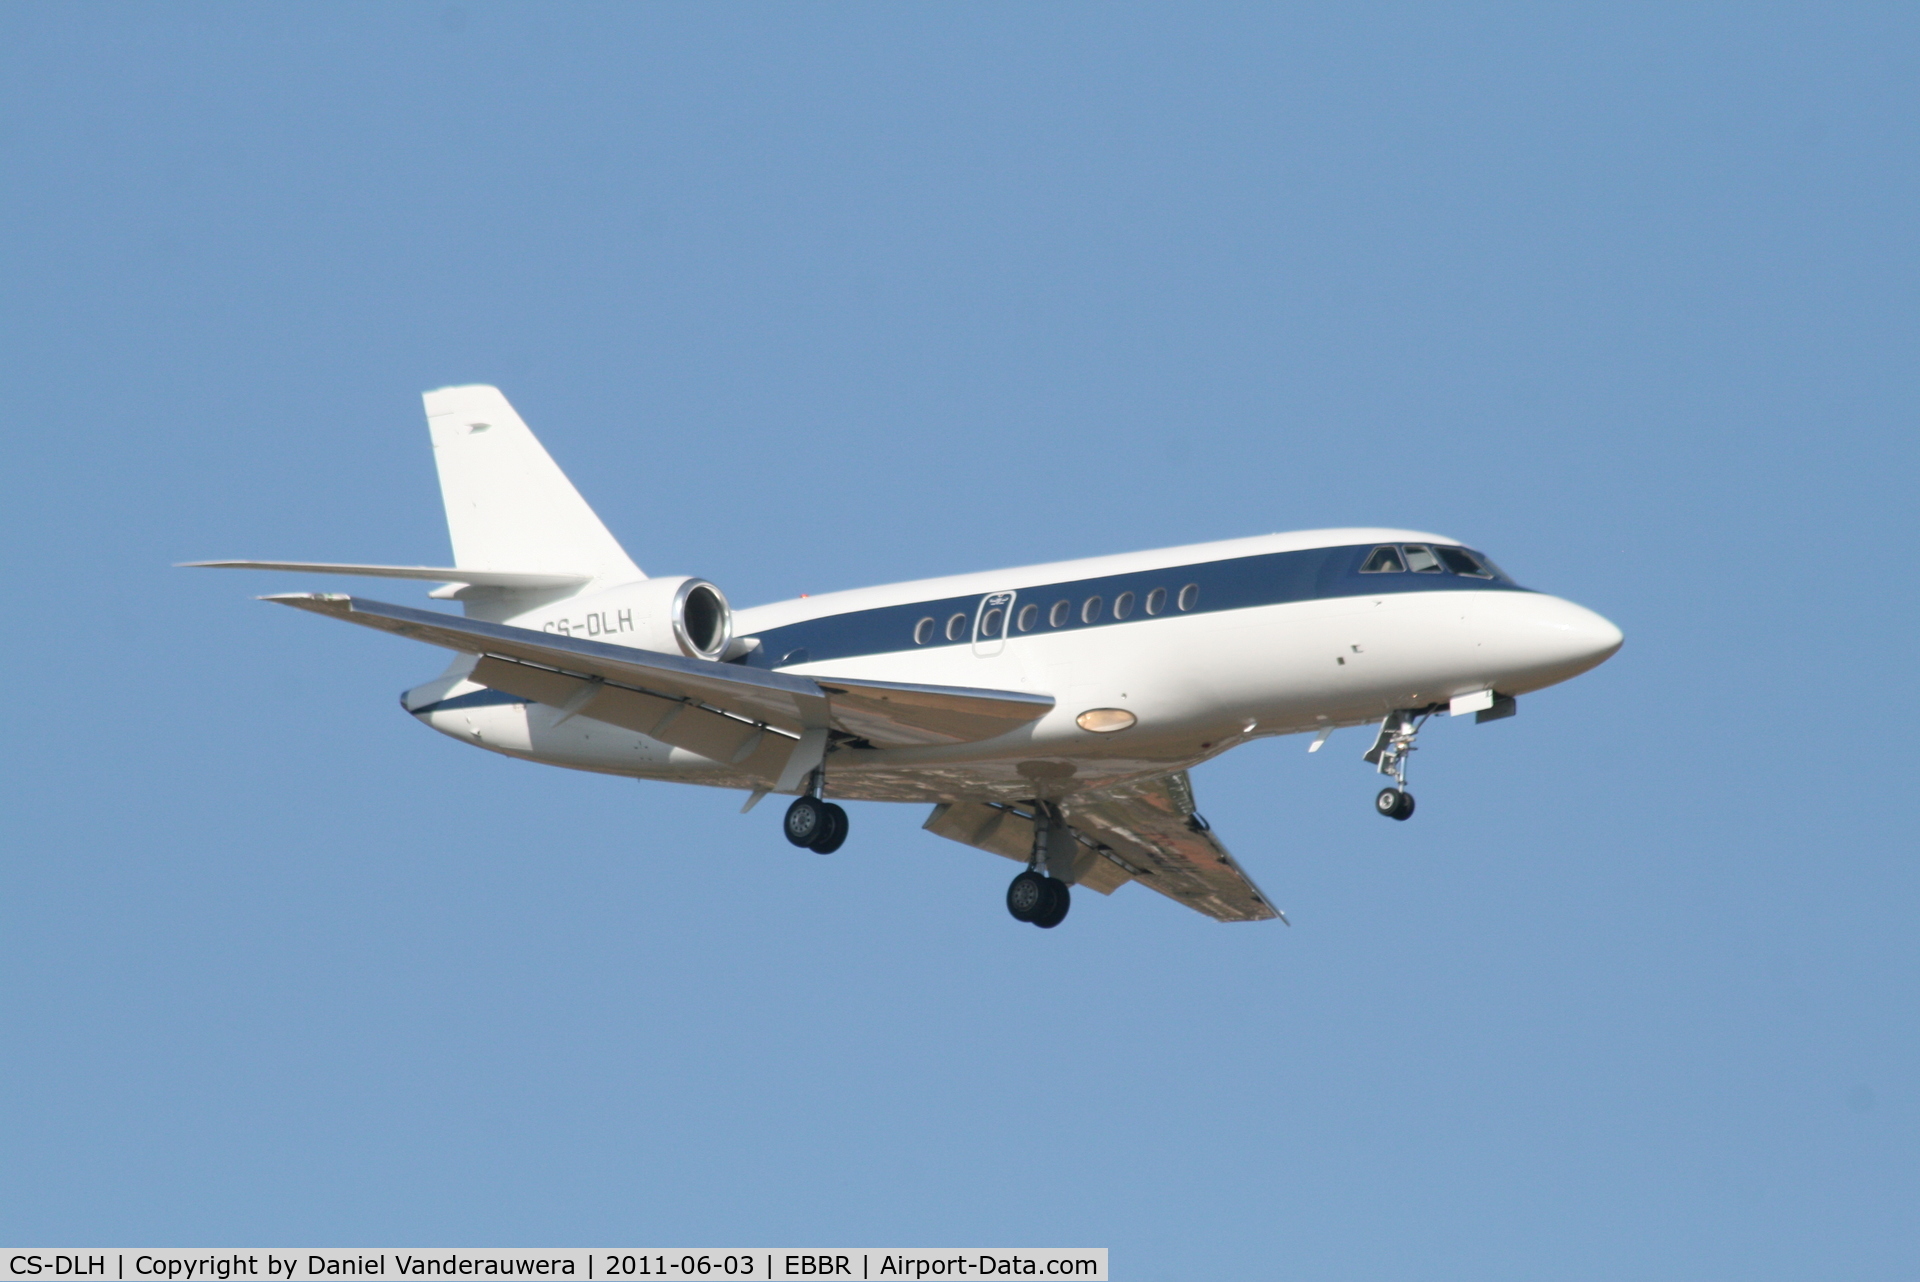 CS-DLH, 2007 Dassault Falcon 2000EX C/N 149, Arrival to RWY 02